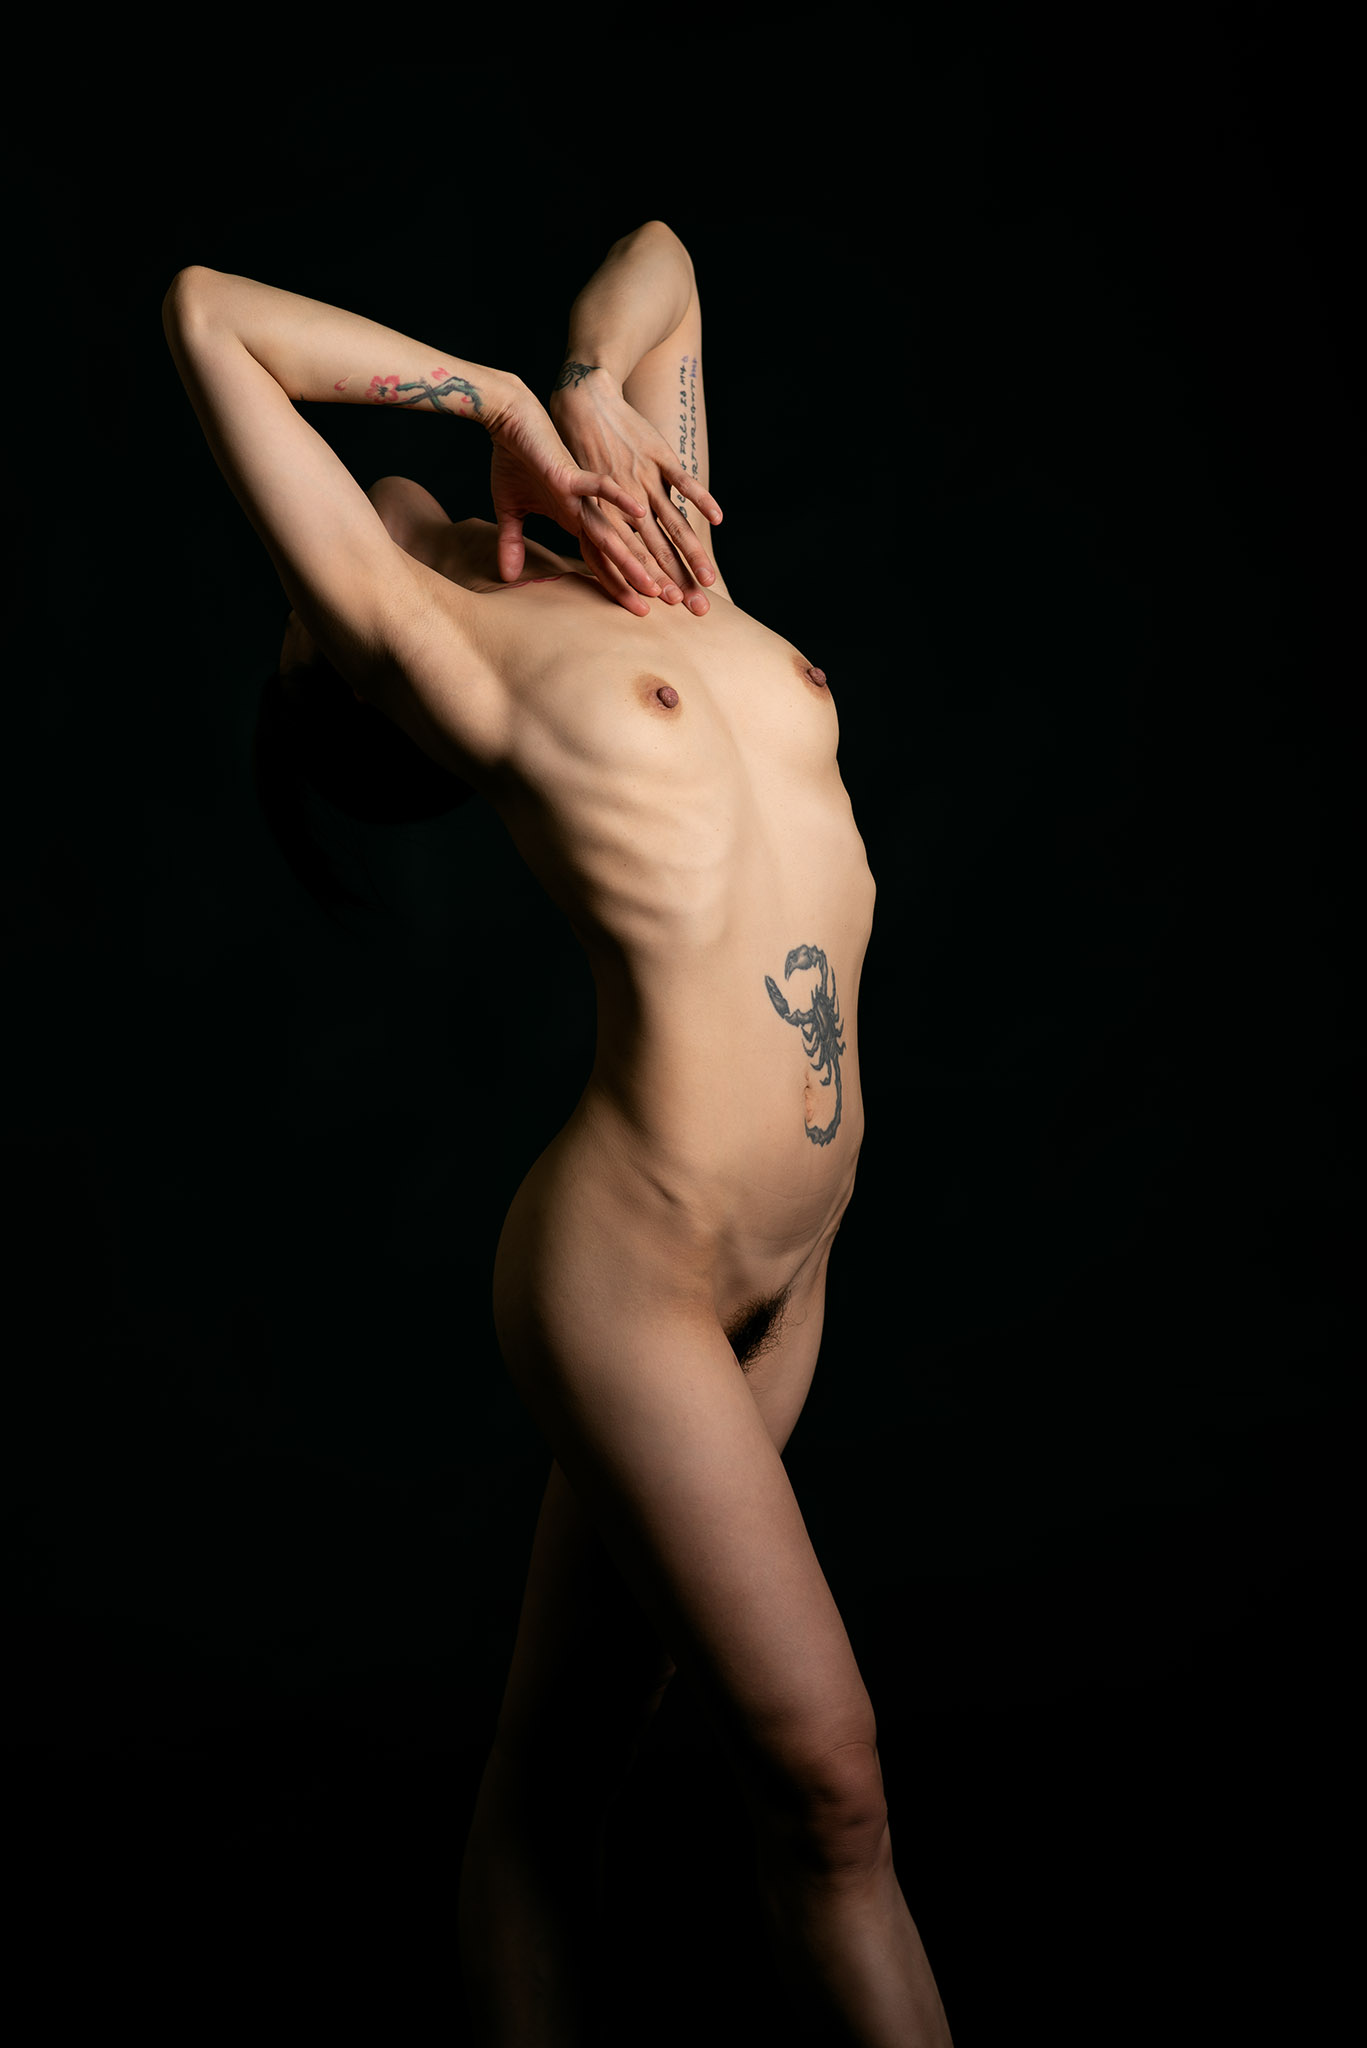 Suelynee ho's model work Photo by Darren body art